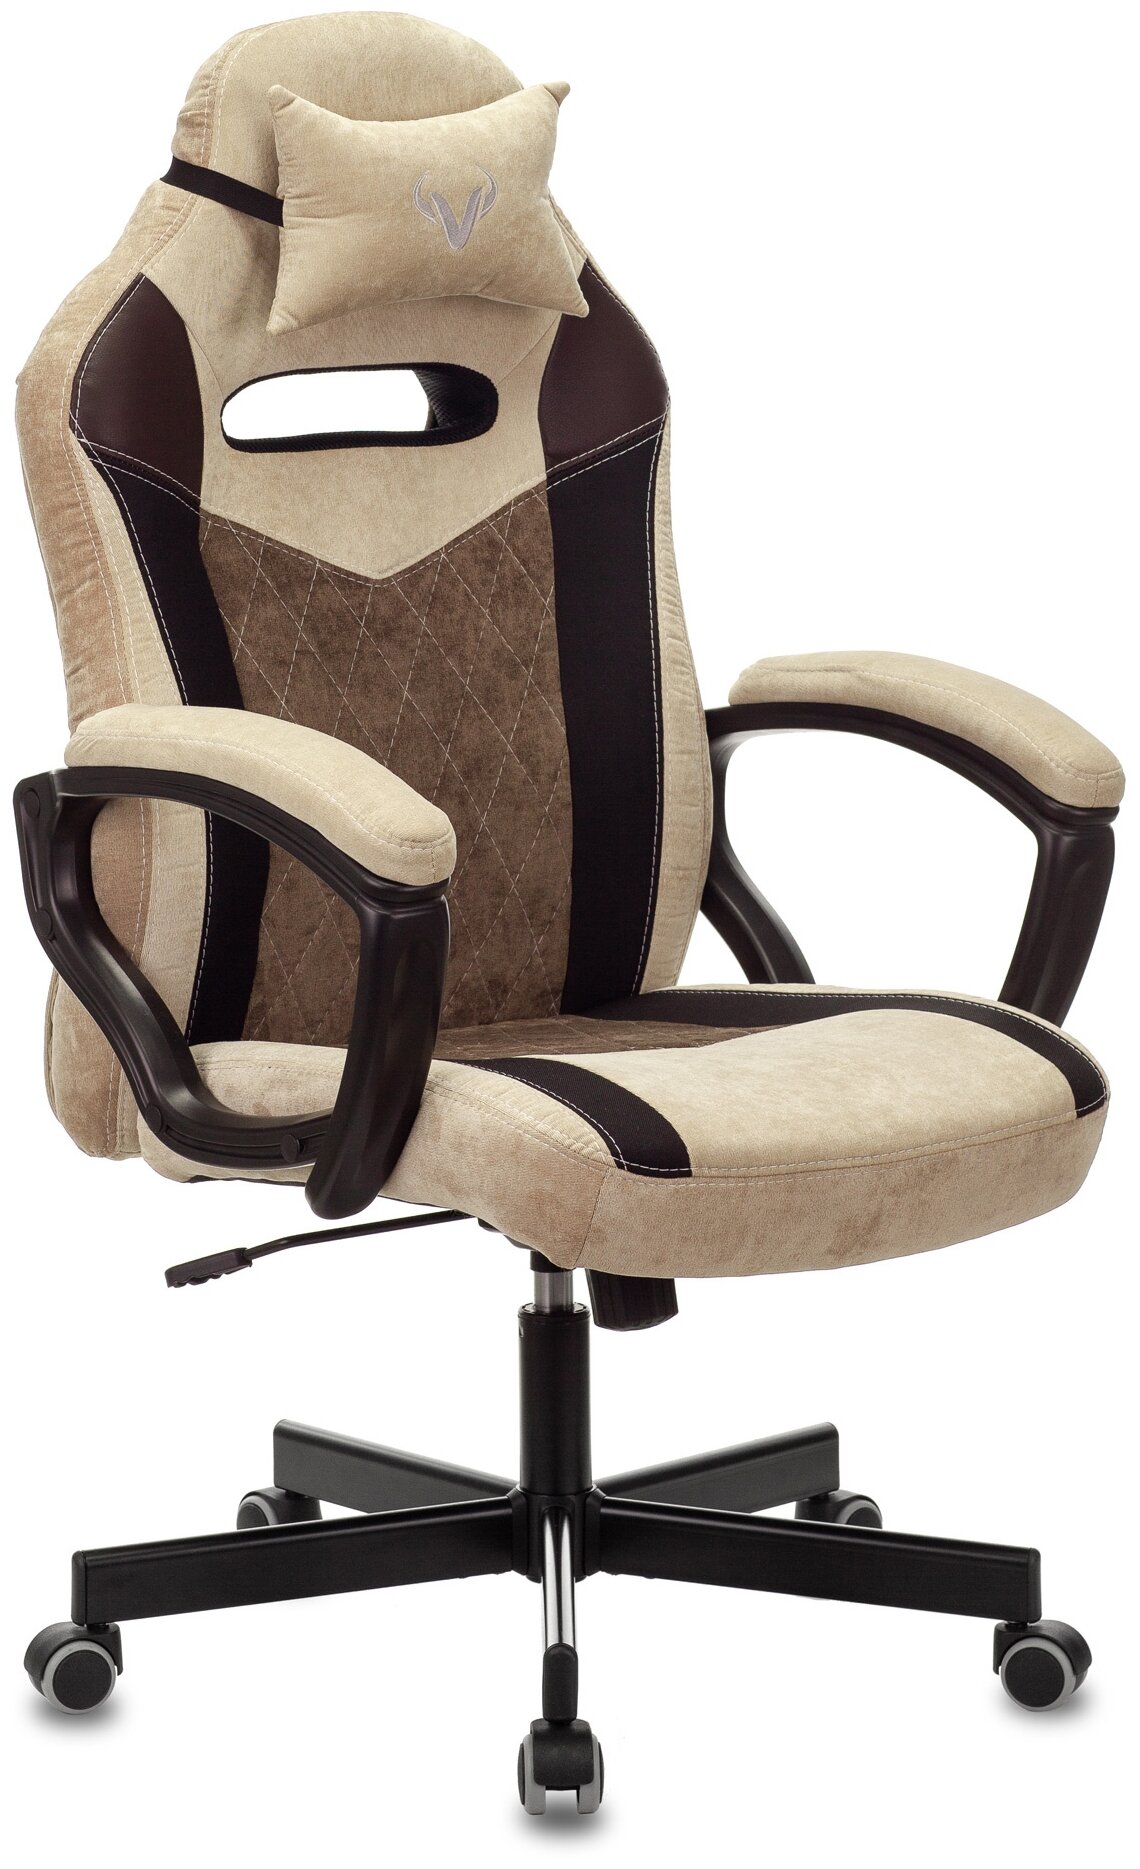 Компьютерное кресло Zombie VIKING-6 KNIGHT игровое, обивка: искусственная кожа/текстиль, цвет: коричневый/бежевый